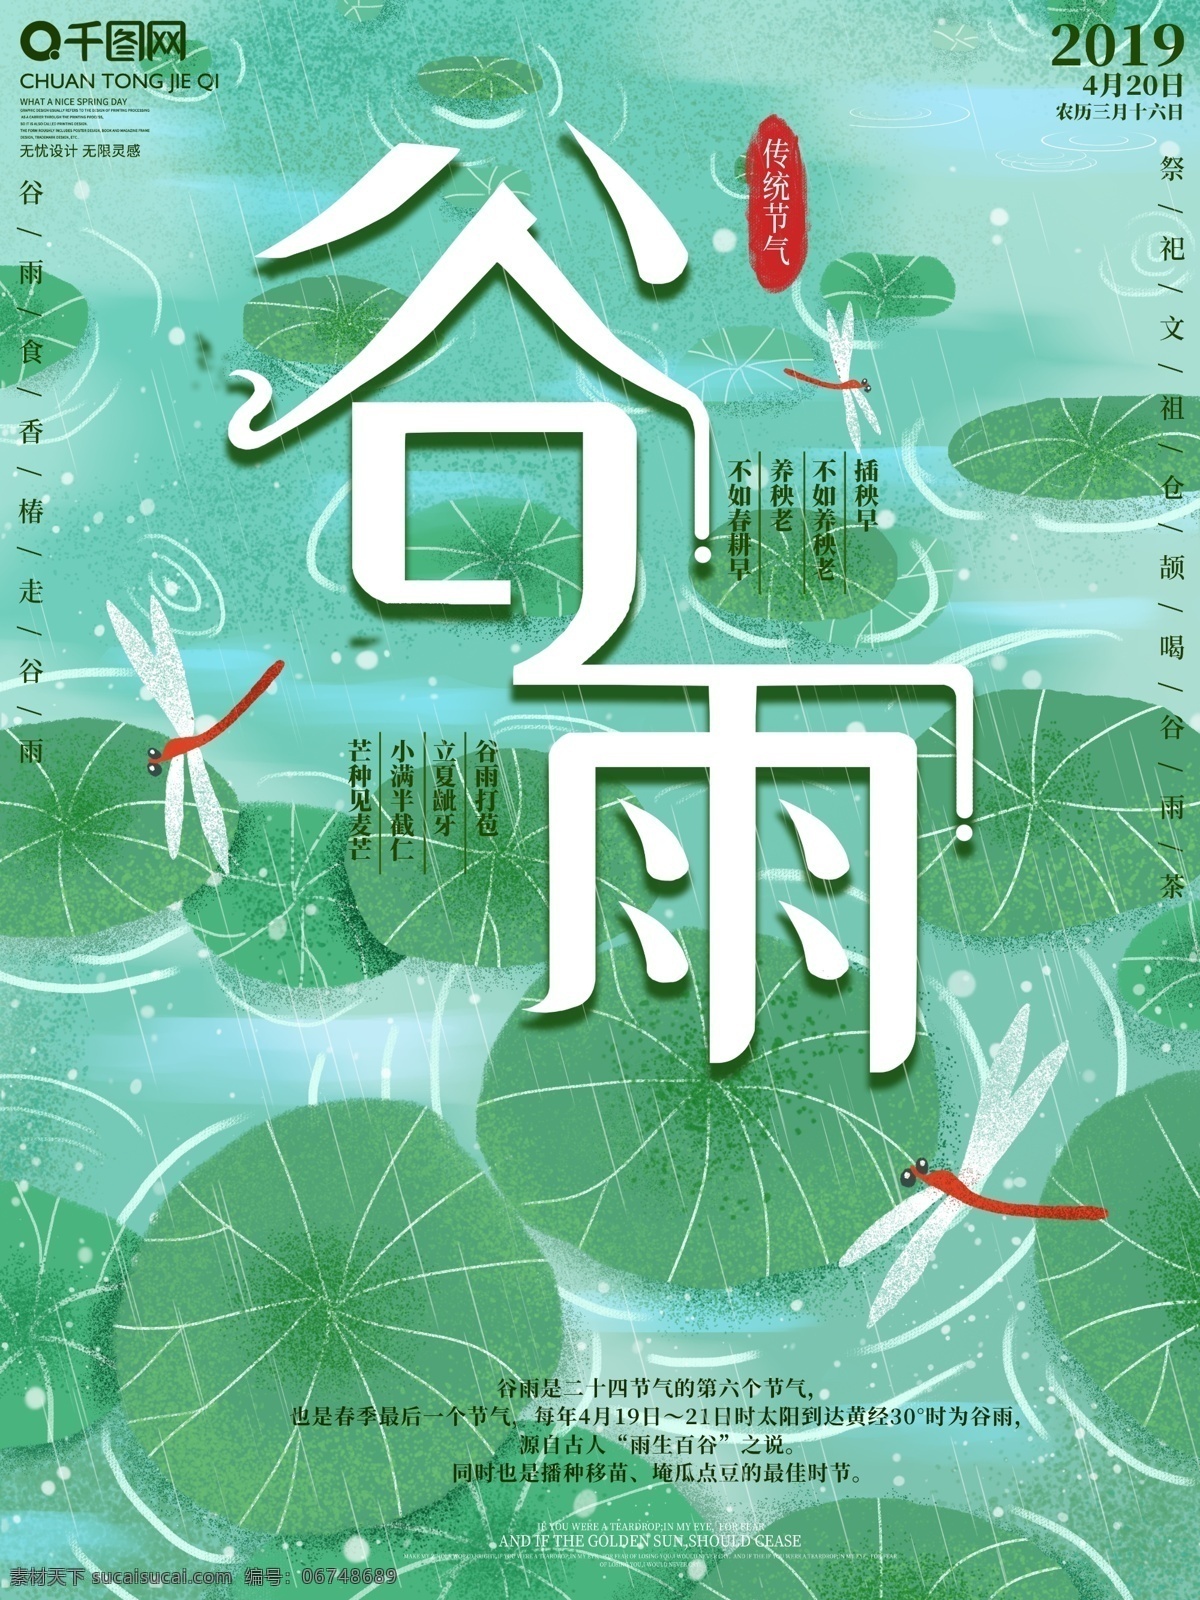 原创 手绘 二十四节气 小 清新 谷雨 海报 中国传统 节气 蜻蜓 荷叶 荷塘 下雨 小清新 节日